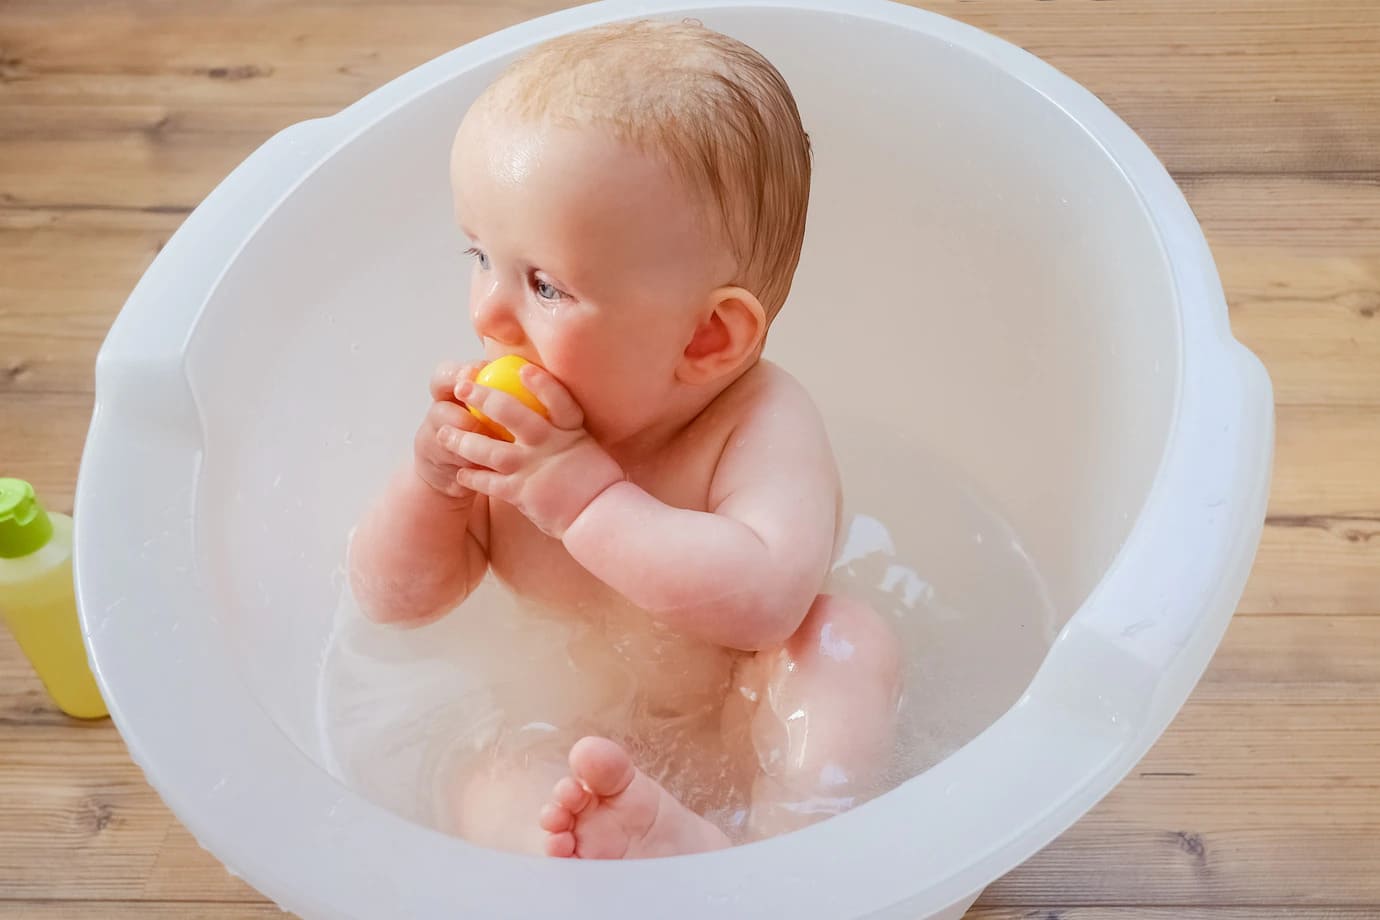 Baia bebelușului: 5 soluții pentru o experiență plăcută